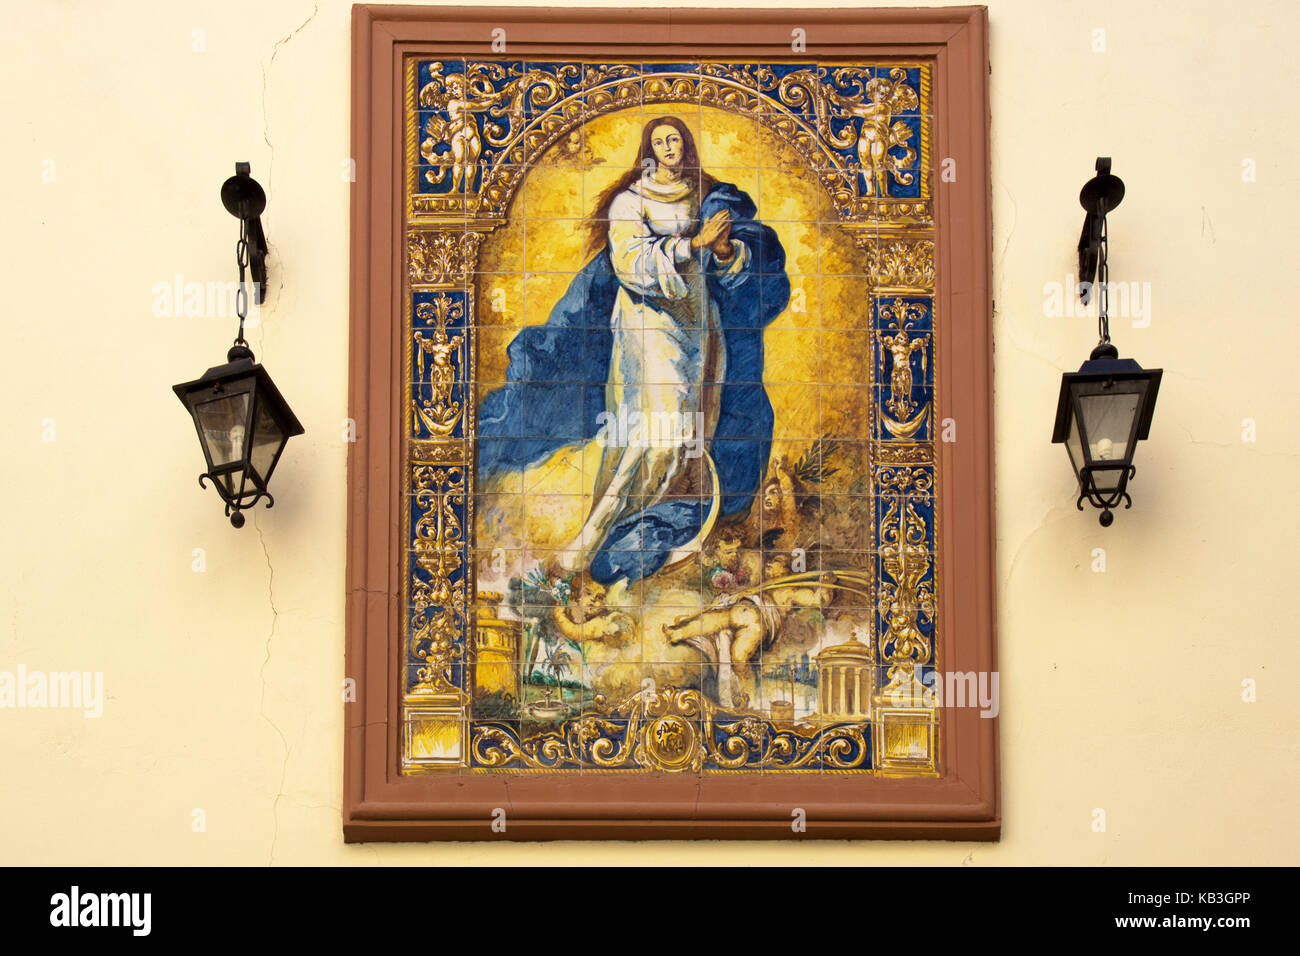 SEVILLE, SPAIN - MARCH 15, 2014: The ceramic tiled Inmaculada Concepción de Nuestra Señora by Desconocido in 1920. Manufactured by Nuestra Señora del  Stock Photo